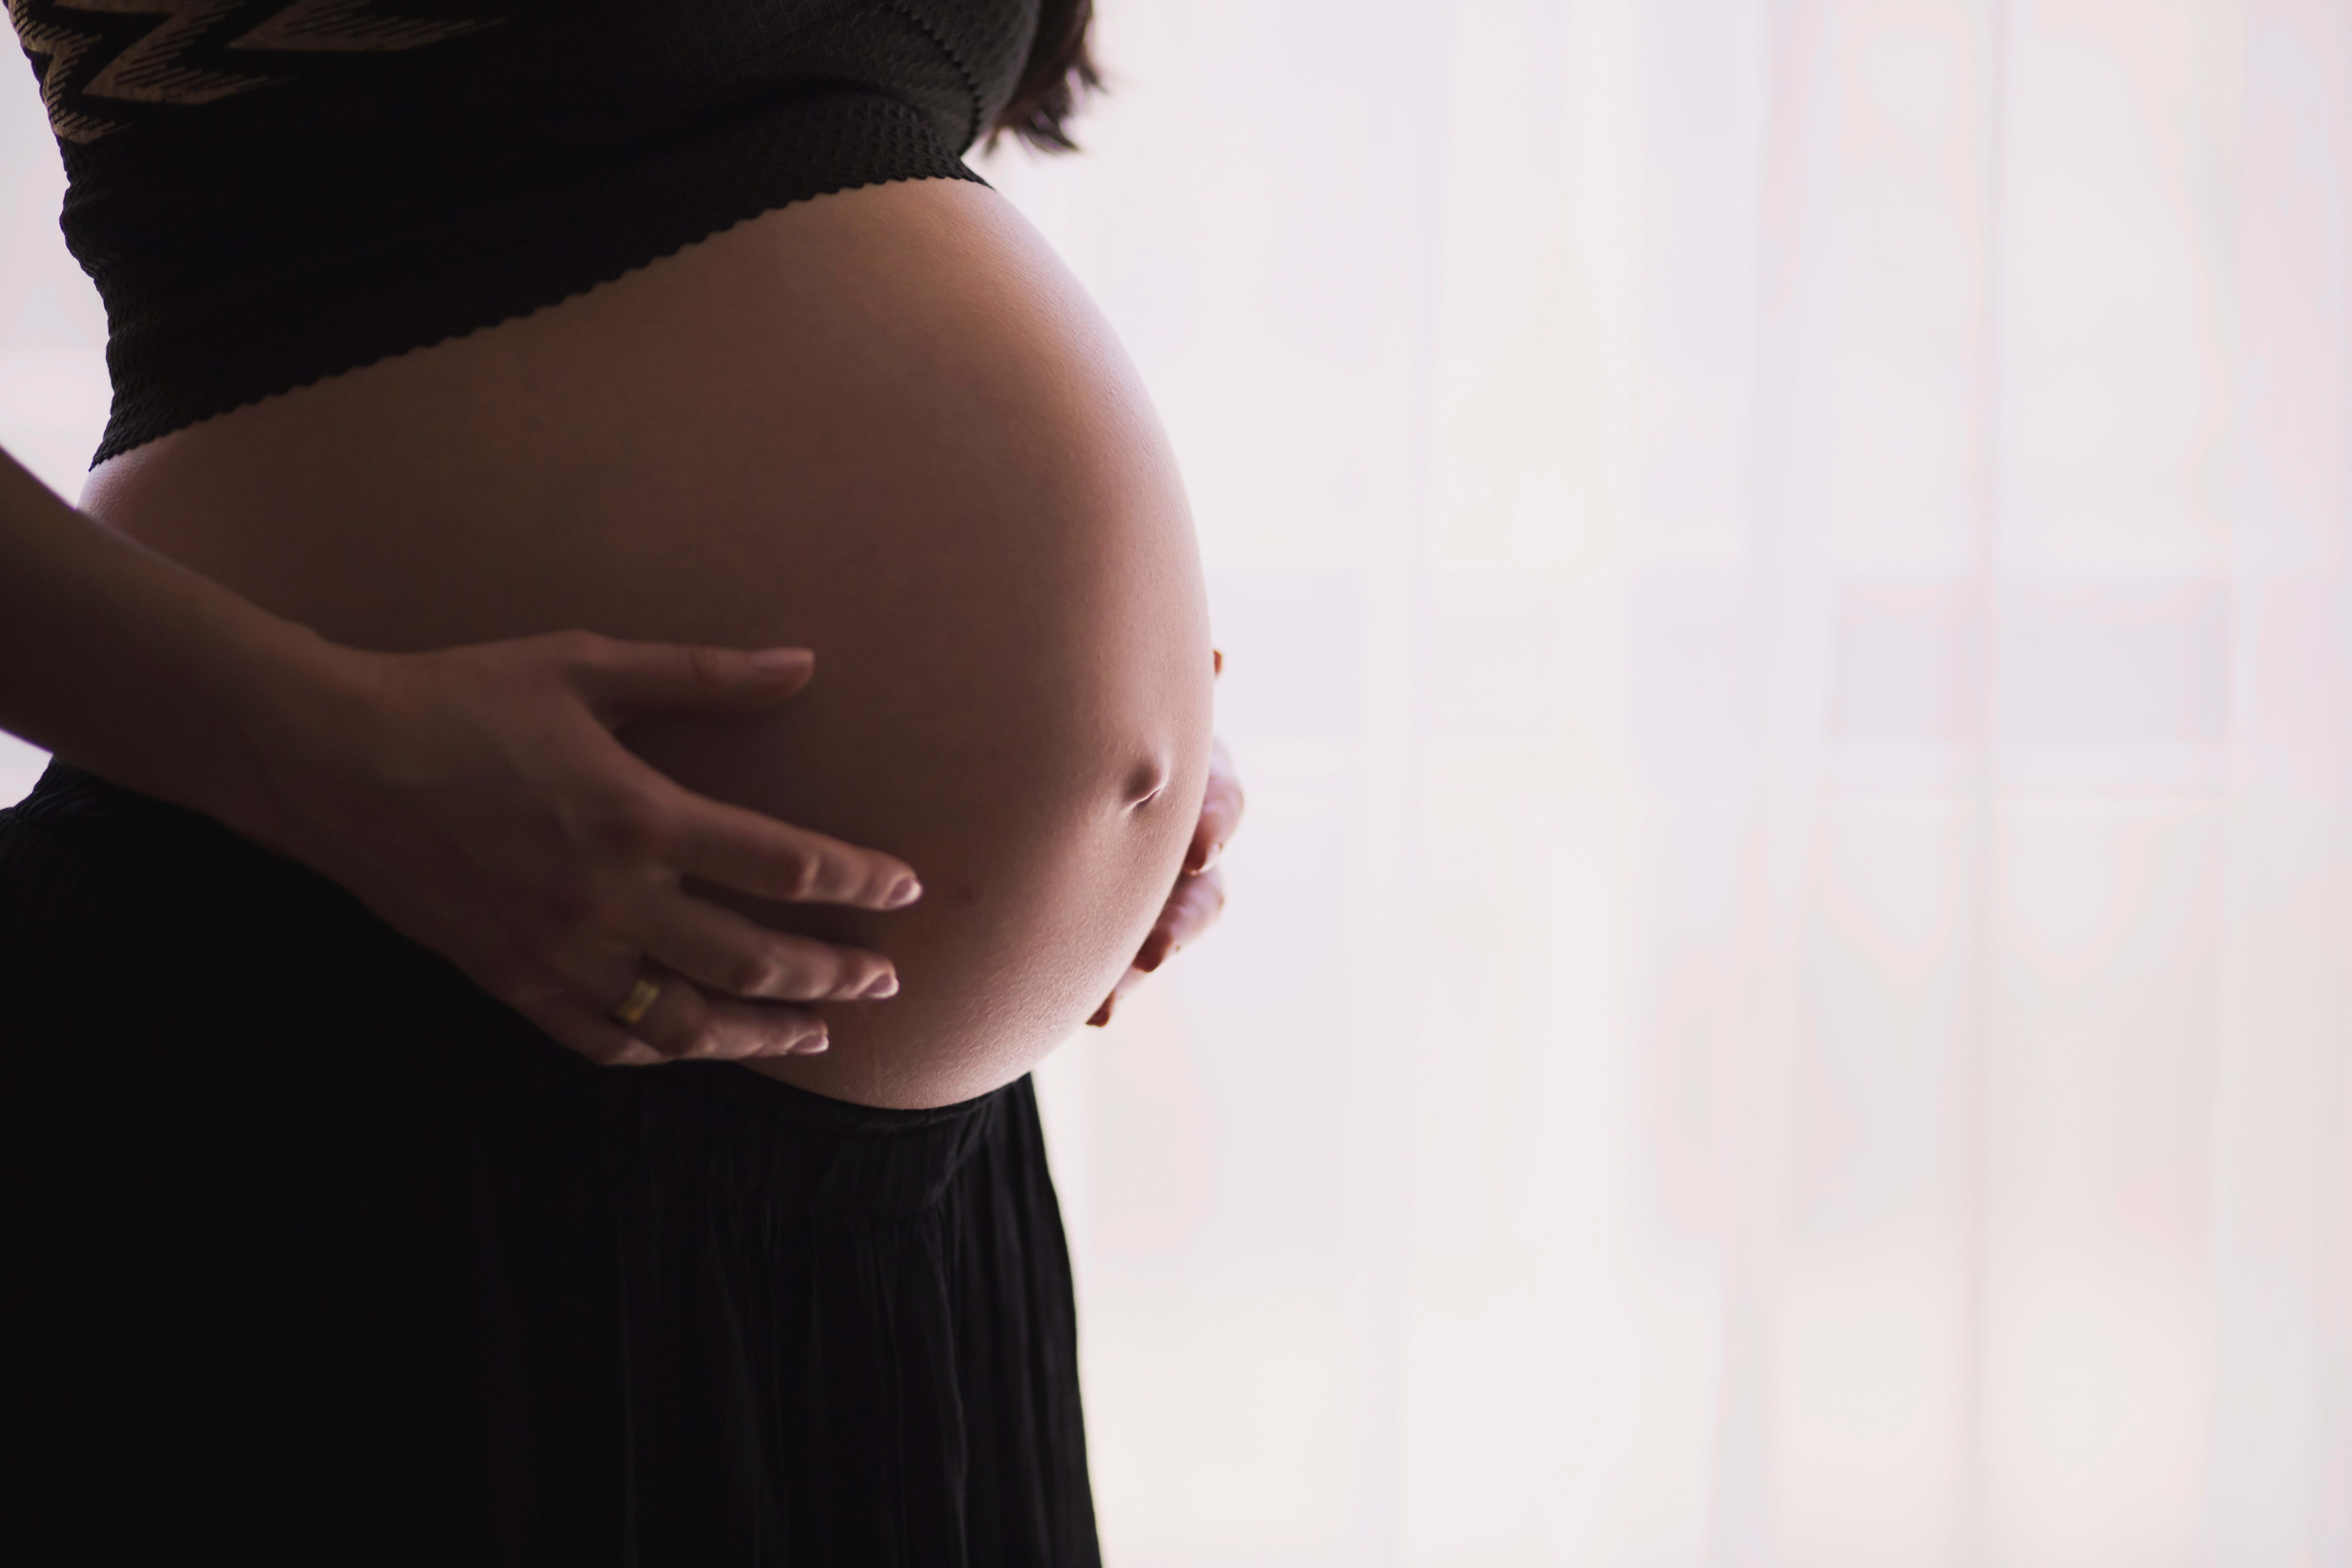 Nieuwe site onthult: hoe veilig is medicatie tijdens zwangerschap?